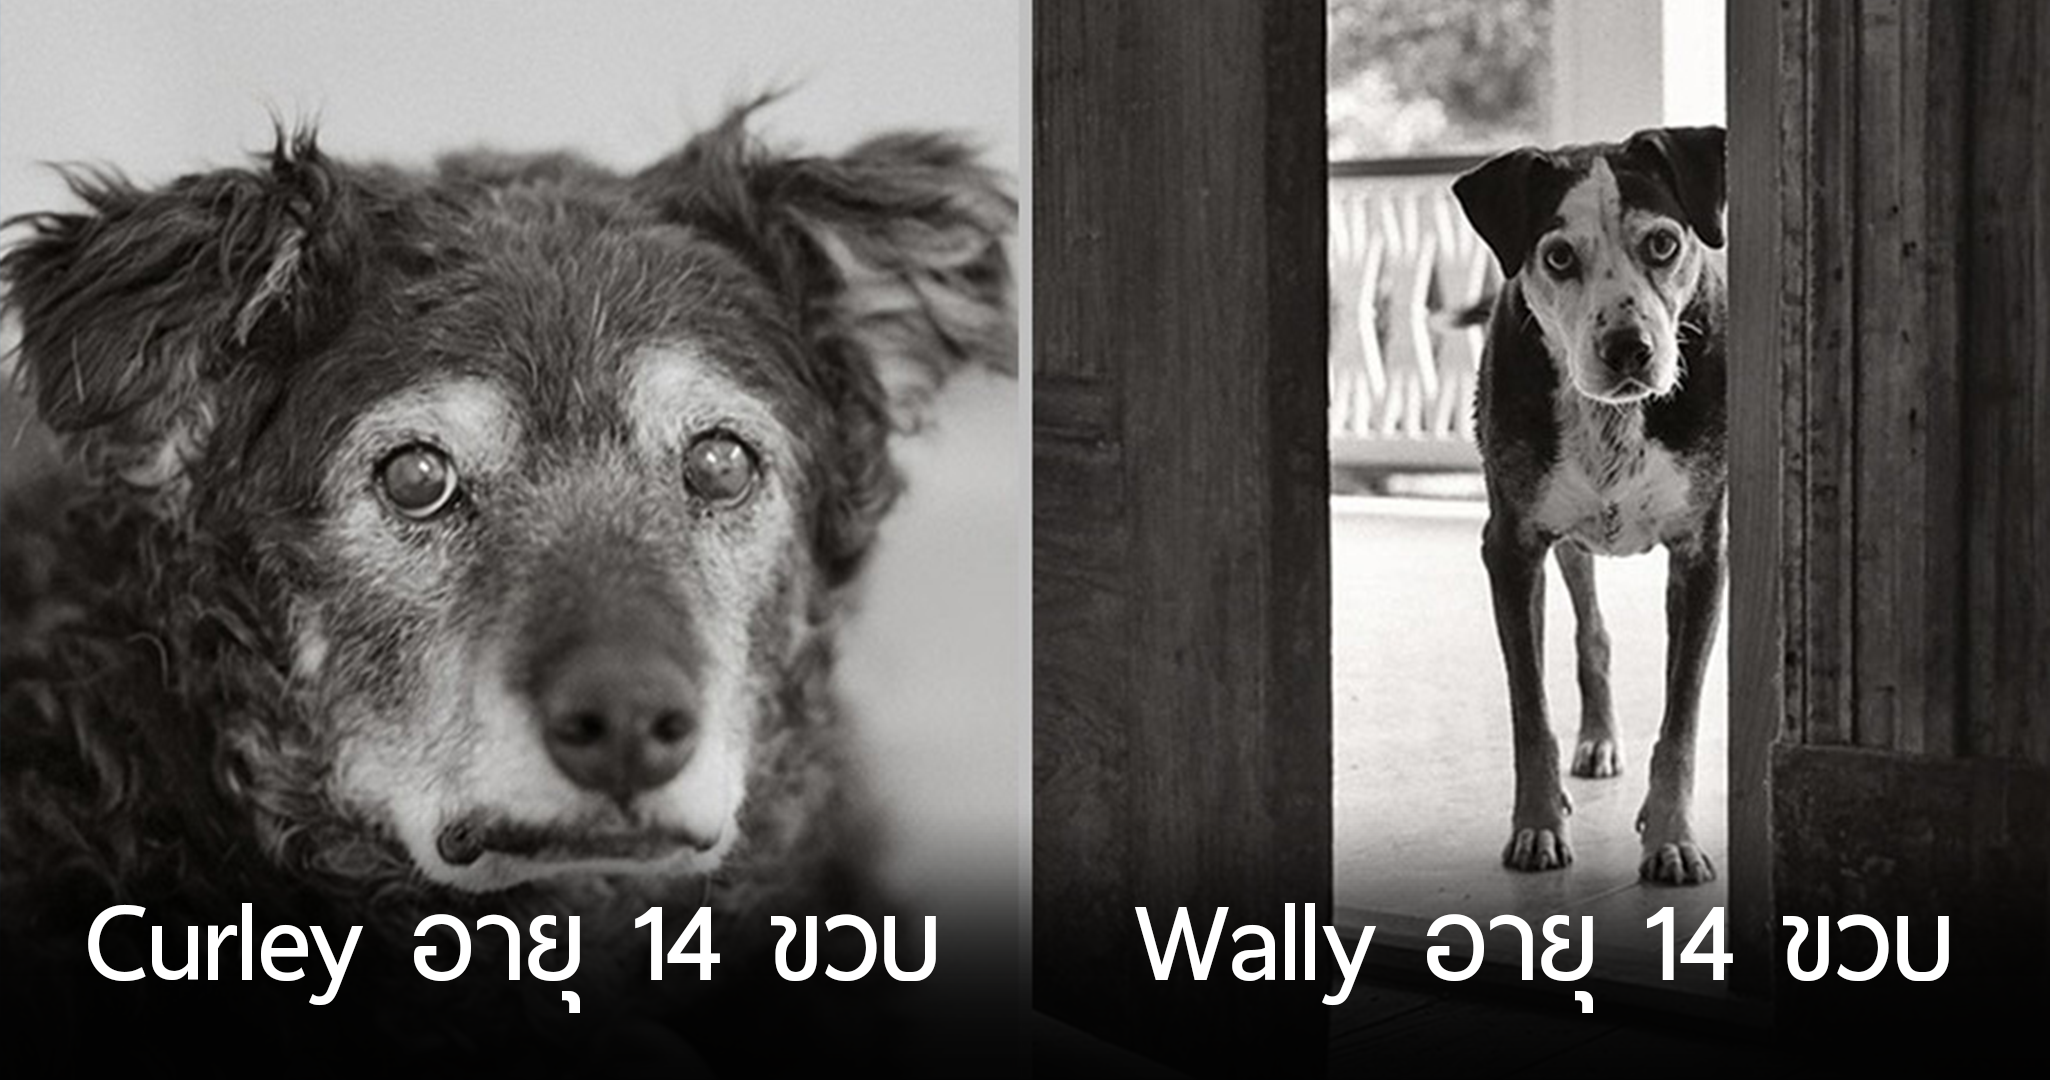 ช่ายภาพตระเวนถ่ายภาพ “สุนัขแก่” ความงดงามช่วงบั้นปลายชีวิต ที่น้อยคนจะมองเห็น